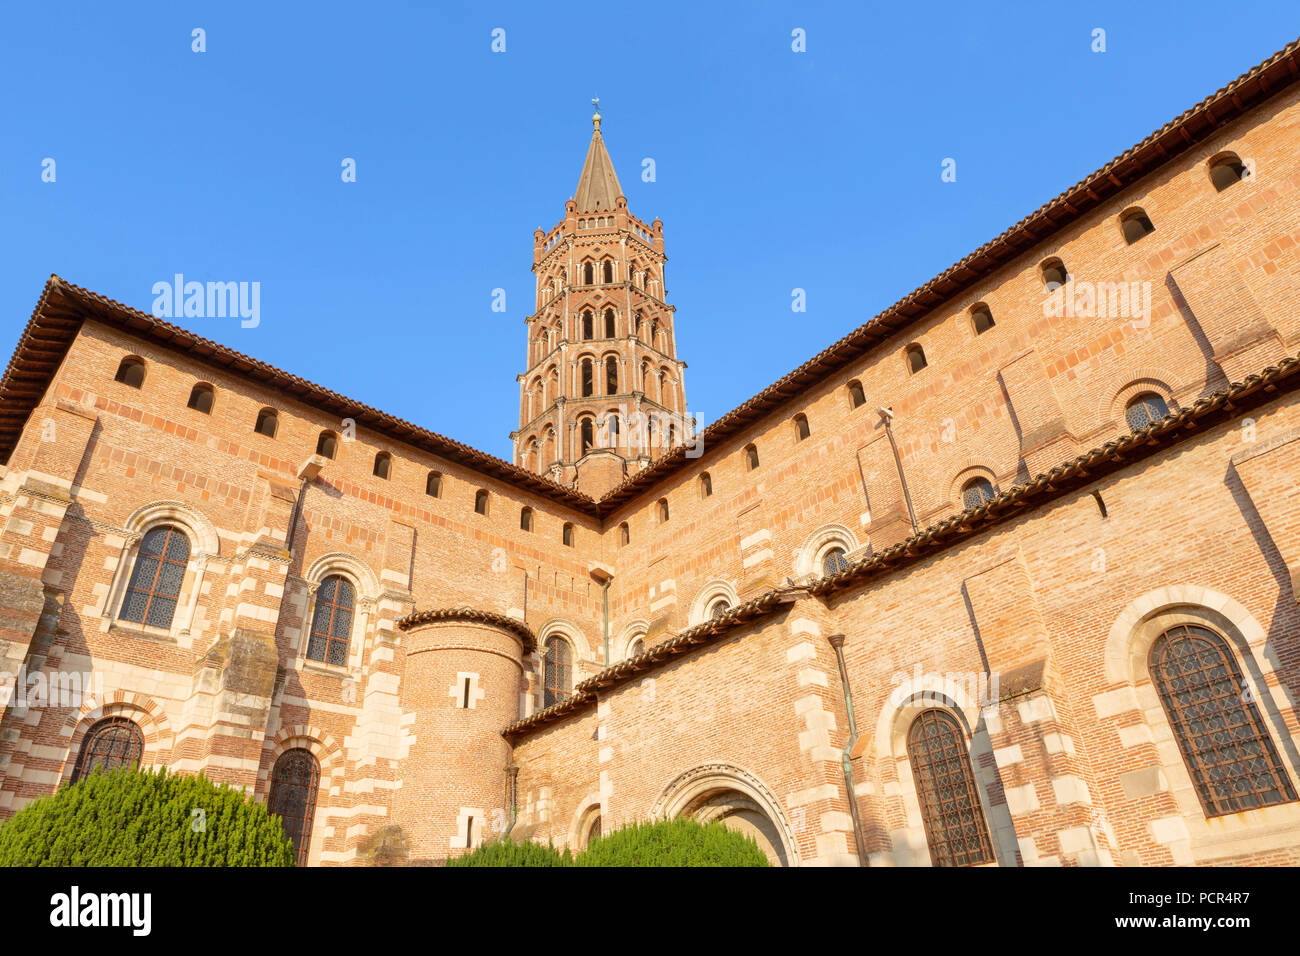 Francia, Toulouse - JULI 9, 2018: restaurata Basilica Saint-Sernin. Un sito Patrimonio Mondiale dell'UNESCO sul Camino de Santiago o pellegrinaggio di composte Foto Stock